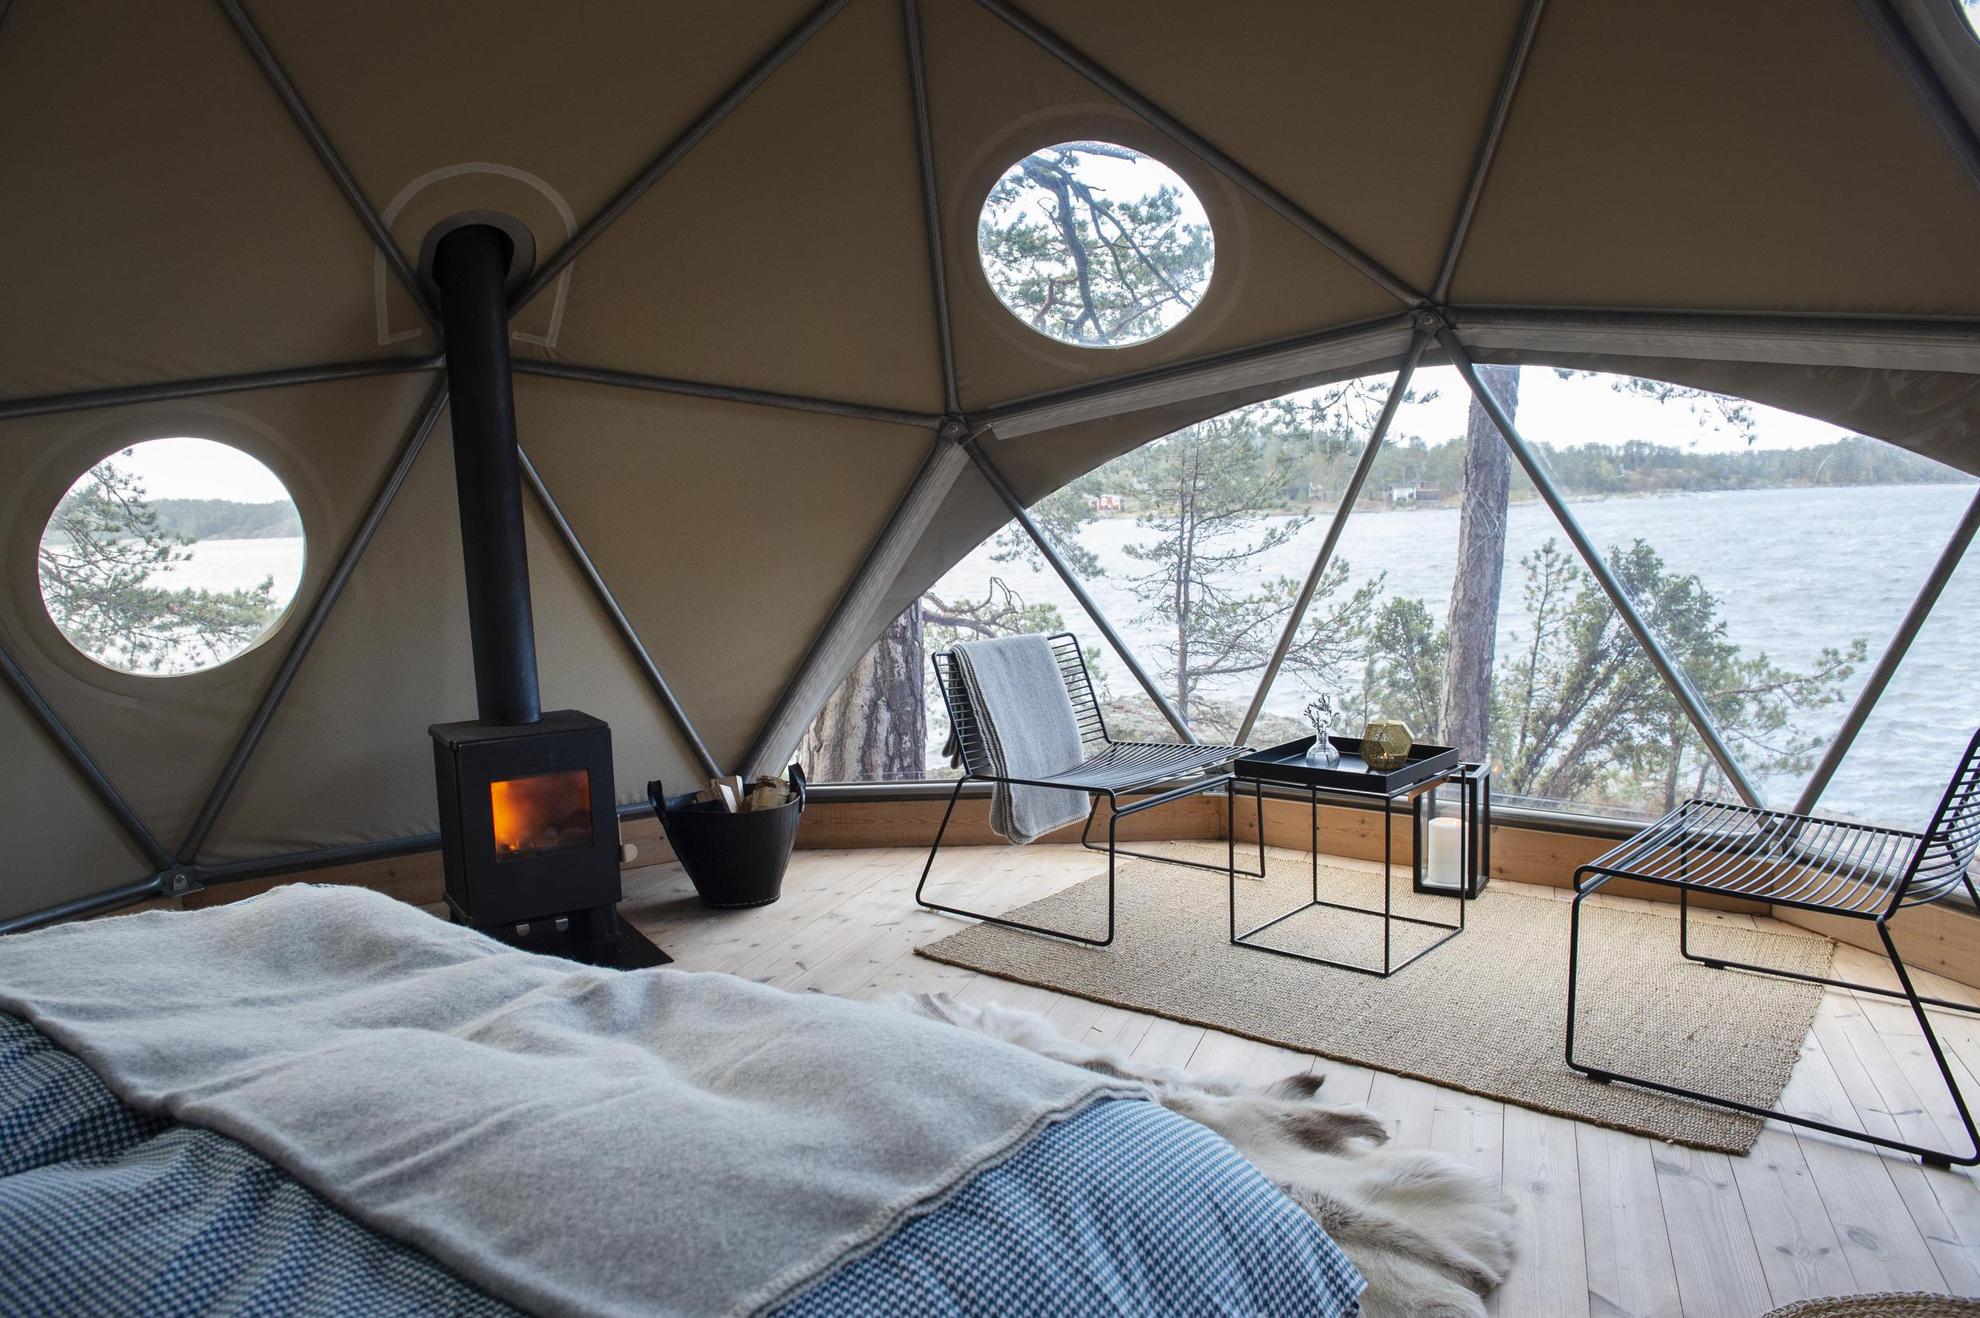 On voit l'intérieur d'une grande tente avec des chaises longues, une table basse, un lit, un poêle à bois. et en arrière-plan,  une vue sur la mer.